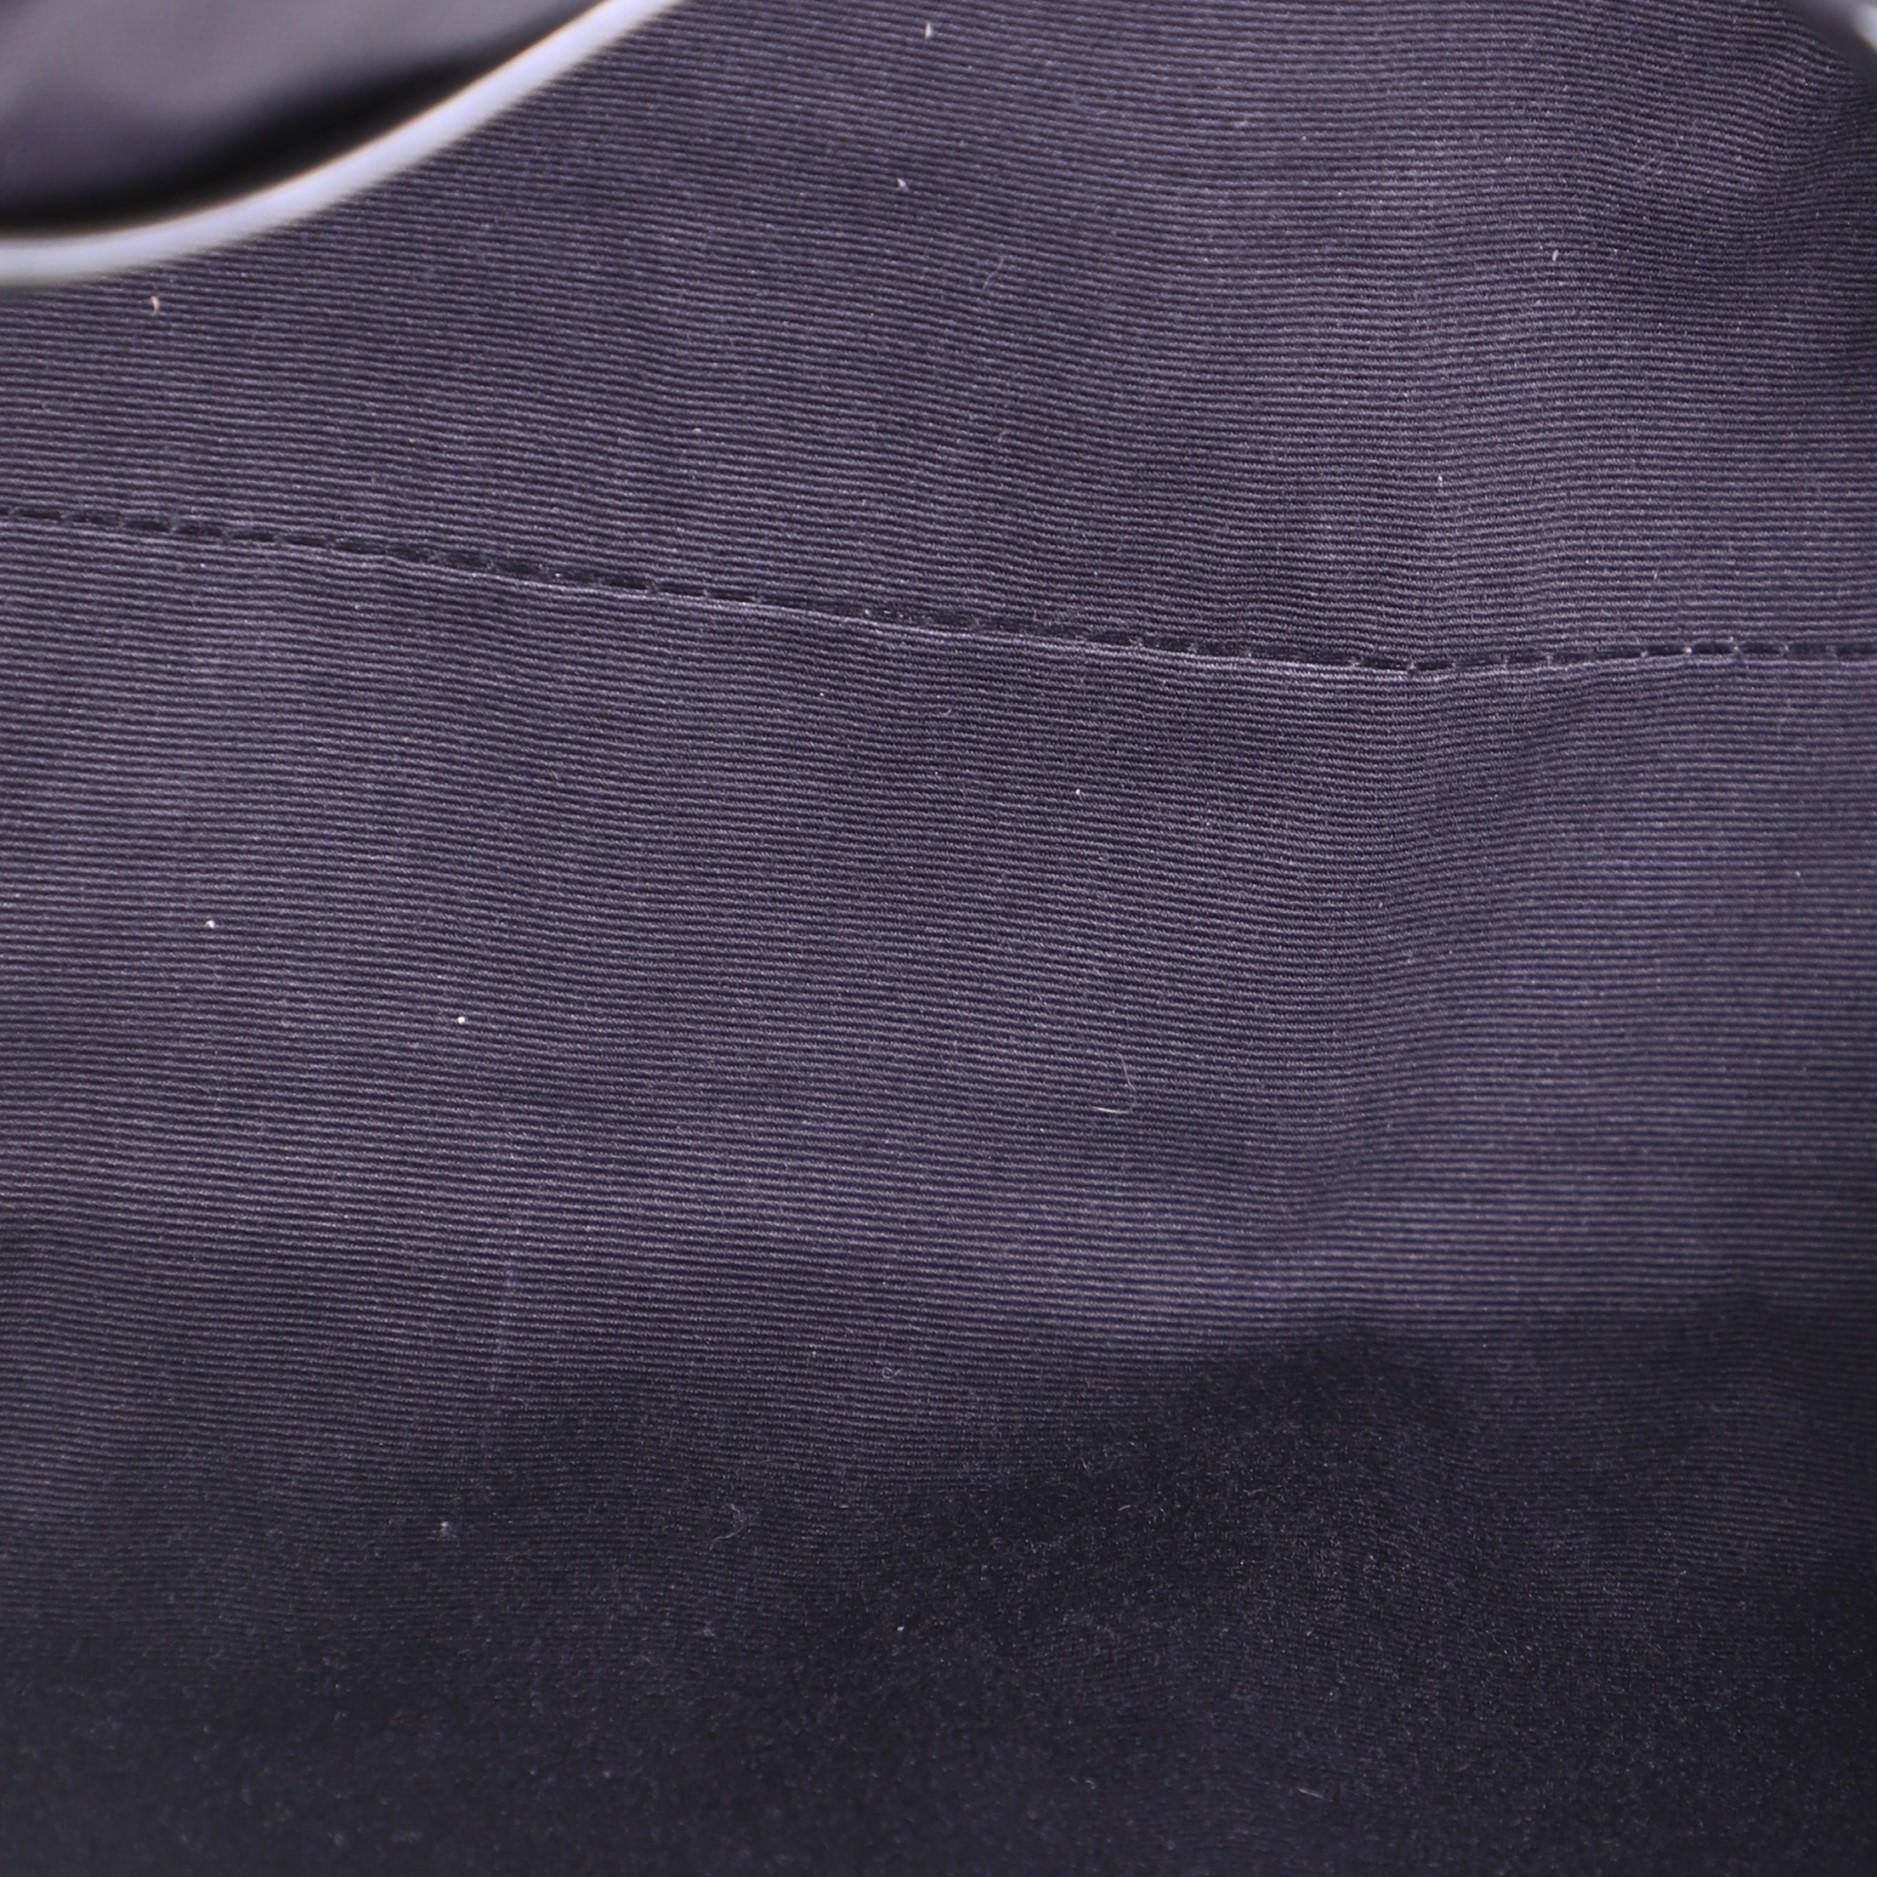 Black Saint Laurent Nolita Satchel Matelasse Chevron Leather Medium